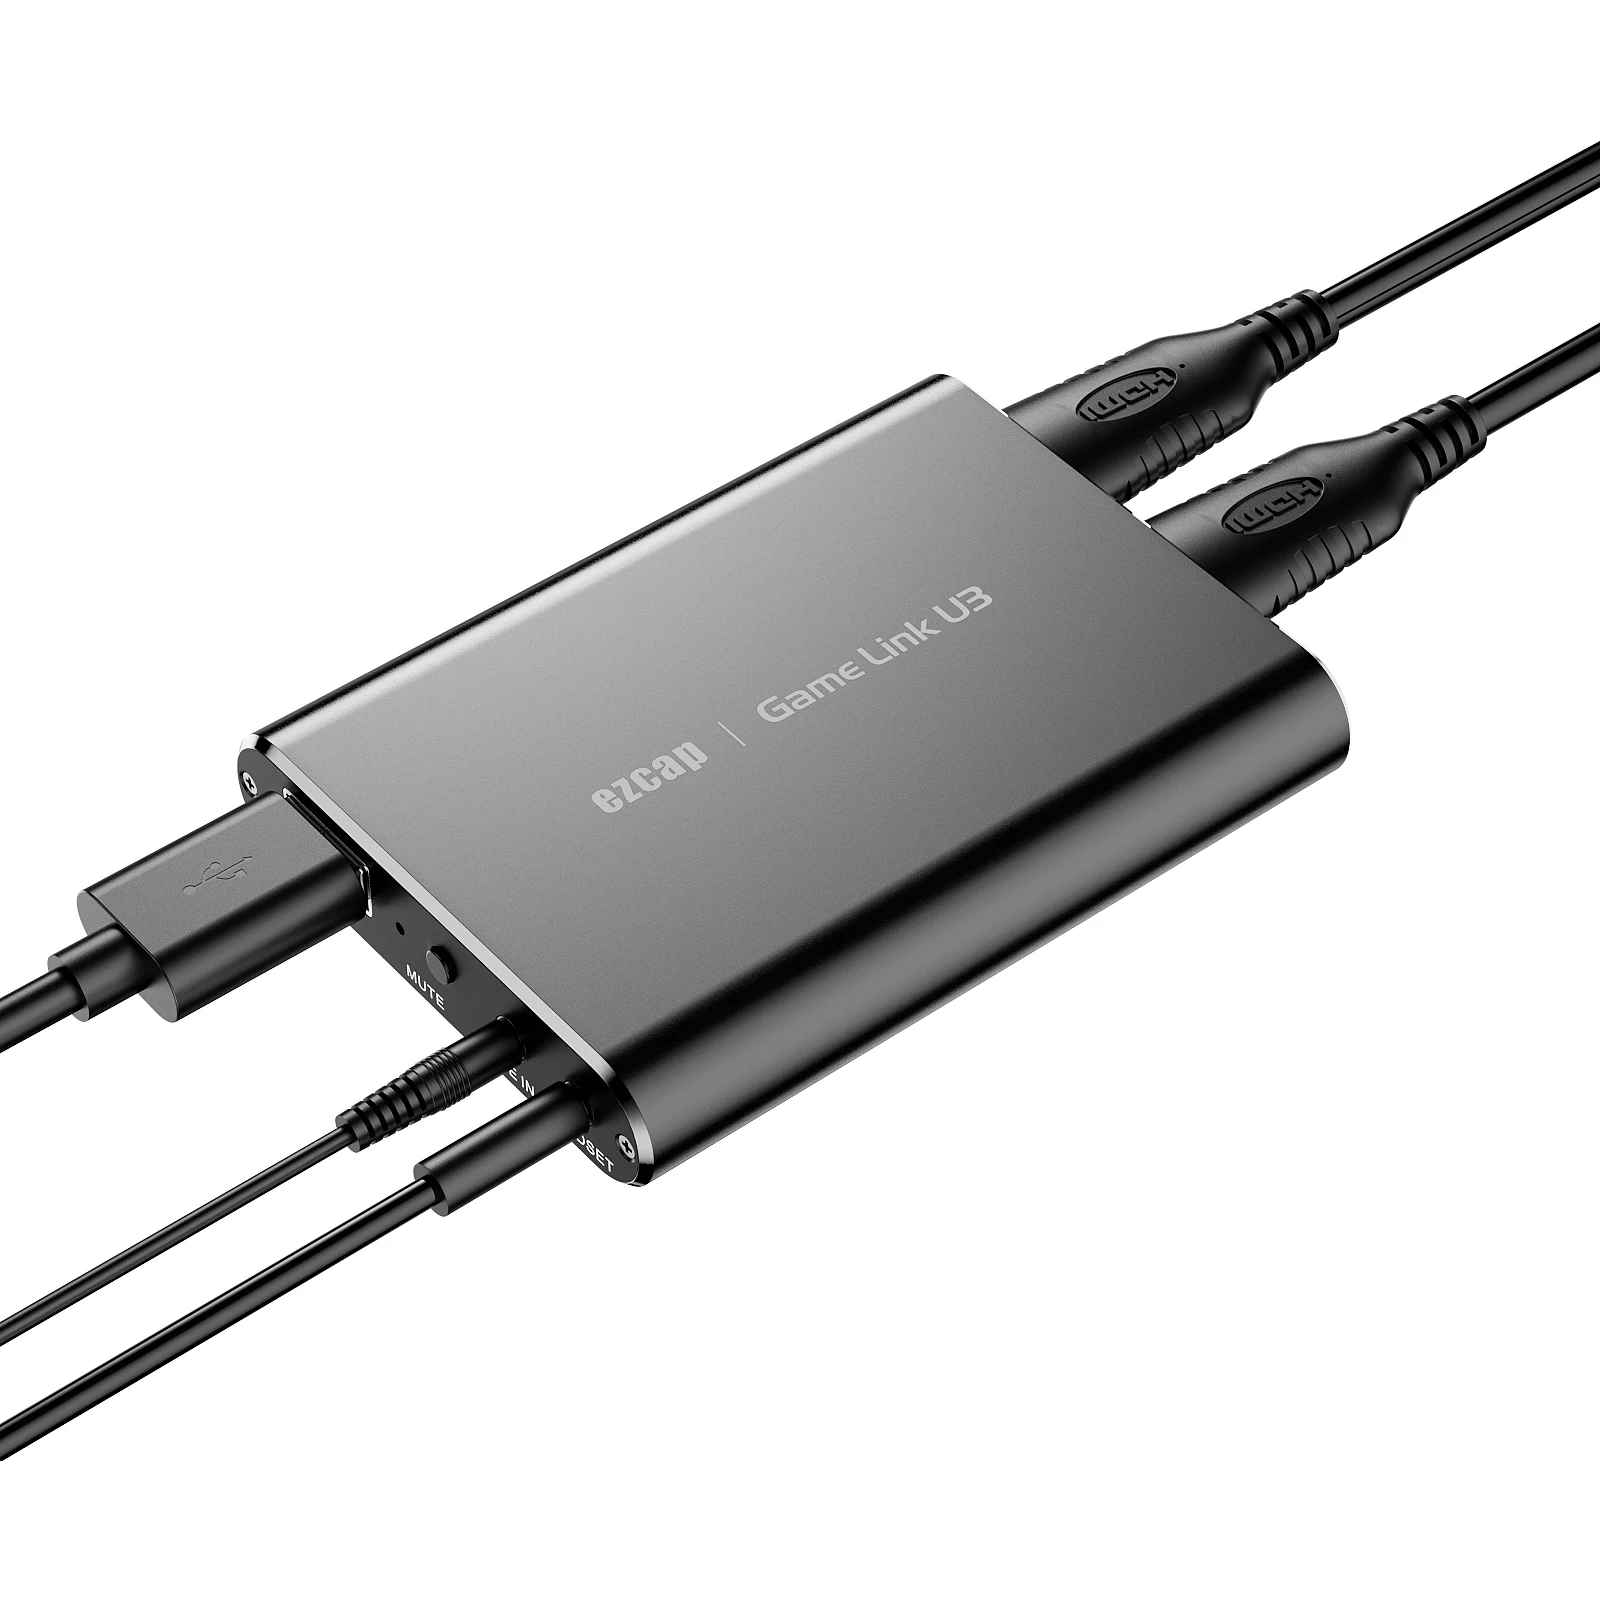 Ezcap371 U3 4K 60hz Loop UVC USB3.0 HDMI Карта видеозахвата YUY2 1080p 60fps Запись прямой трансляции для PS4 PS5 Игровая камера ПК